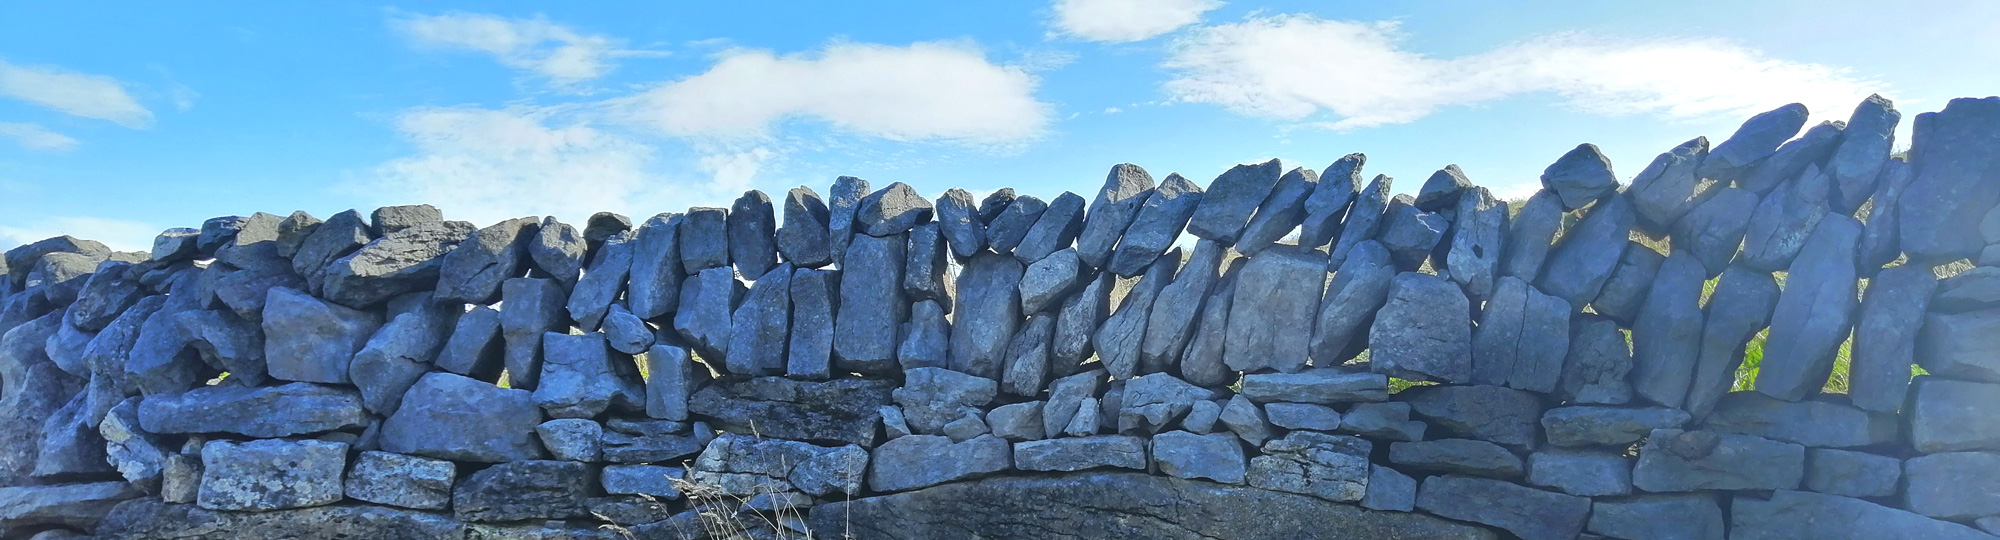 Burren, le pays de pierre